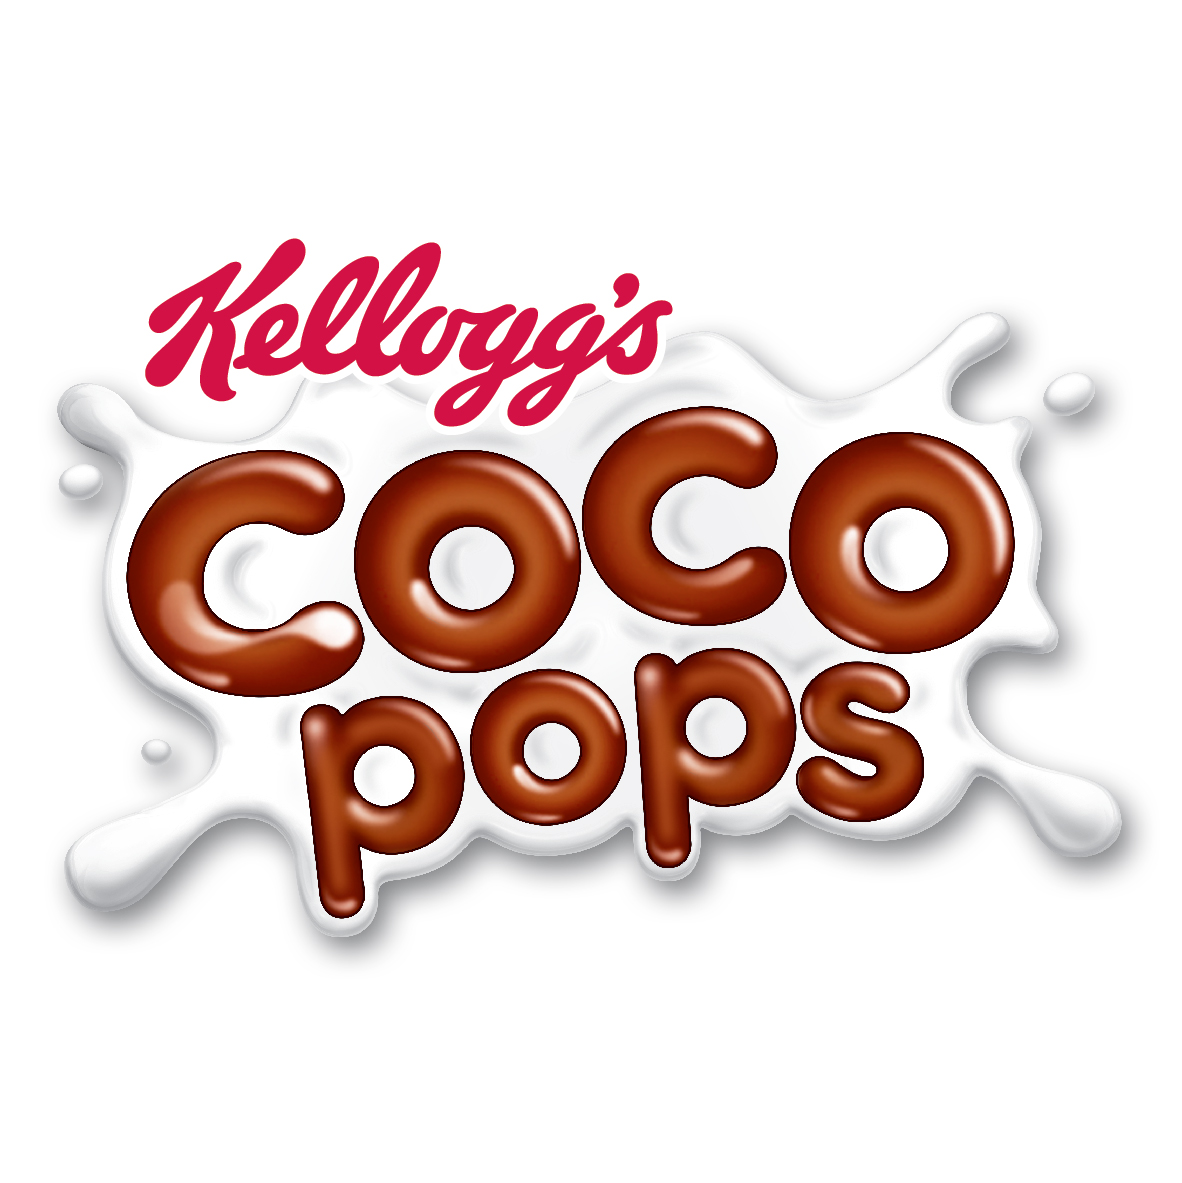 Τα αγαπημένα Kellogg’s Coco Pops μοίρασαν χιλιάδες χαμόγελα στους μικρούς τους φίλους!